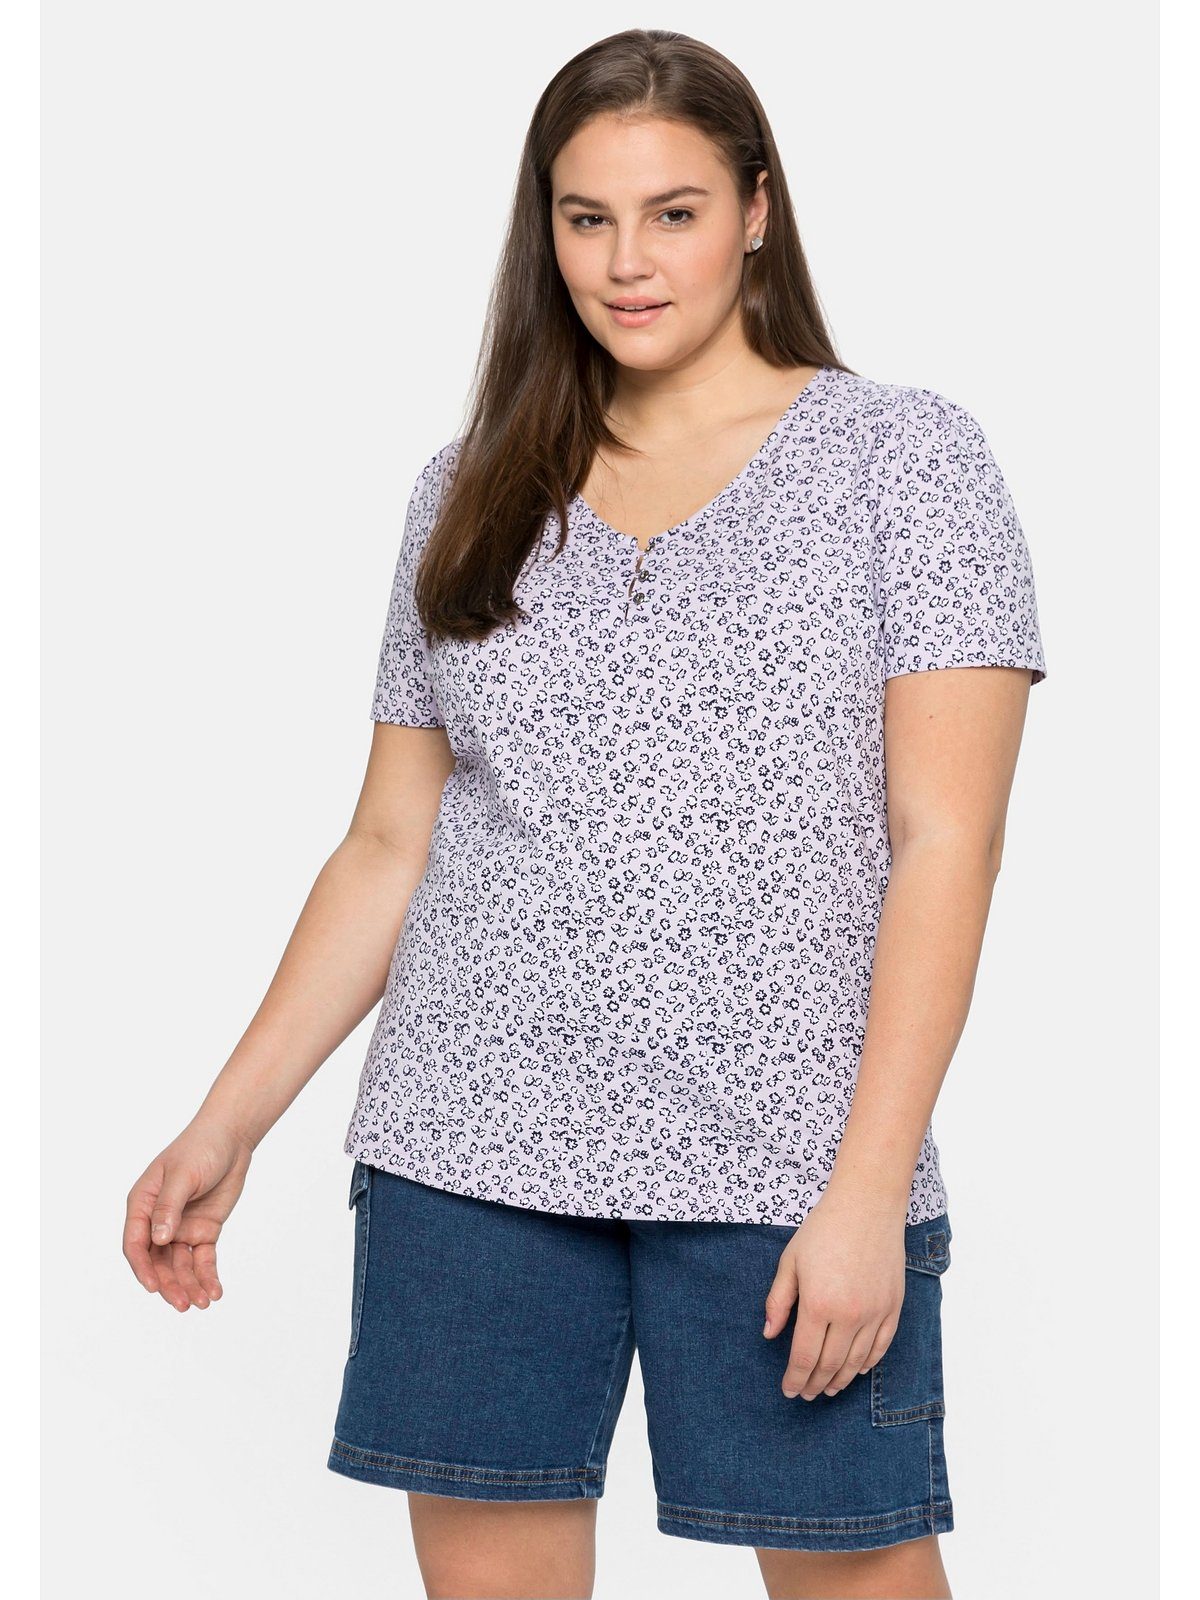 Sheego T-Shirt Große mit Alloverdruck zartem Größen